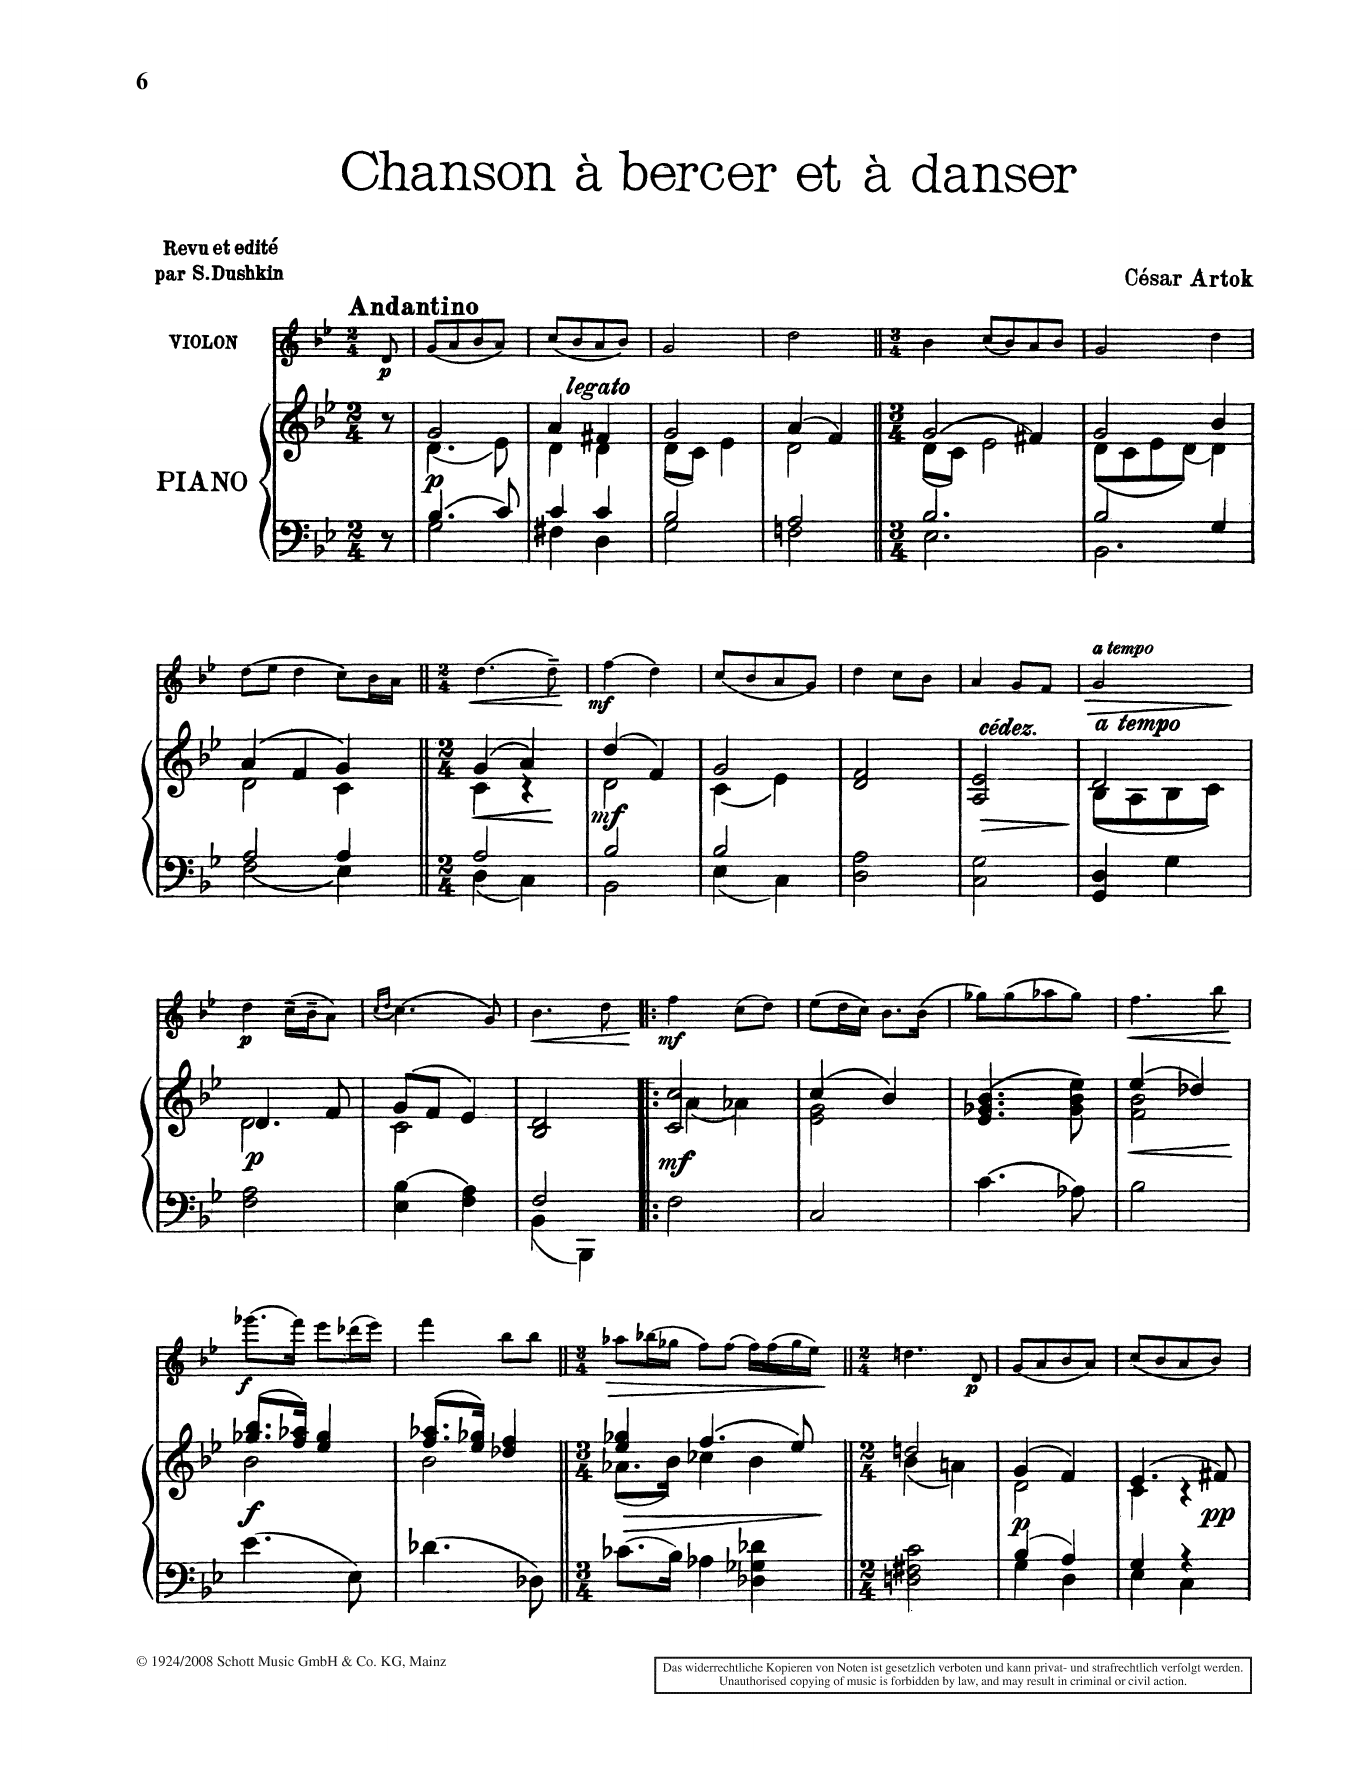 César Artok Chanson à bercer et à danser Sheet Music Notes & Chords for String Solo - Download or Print PDF